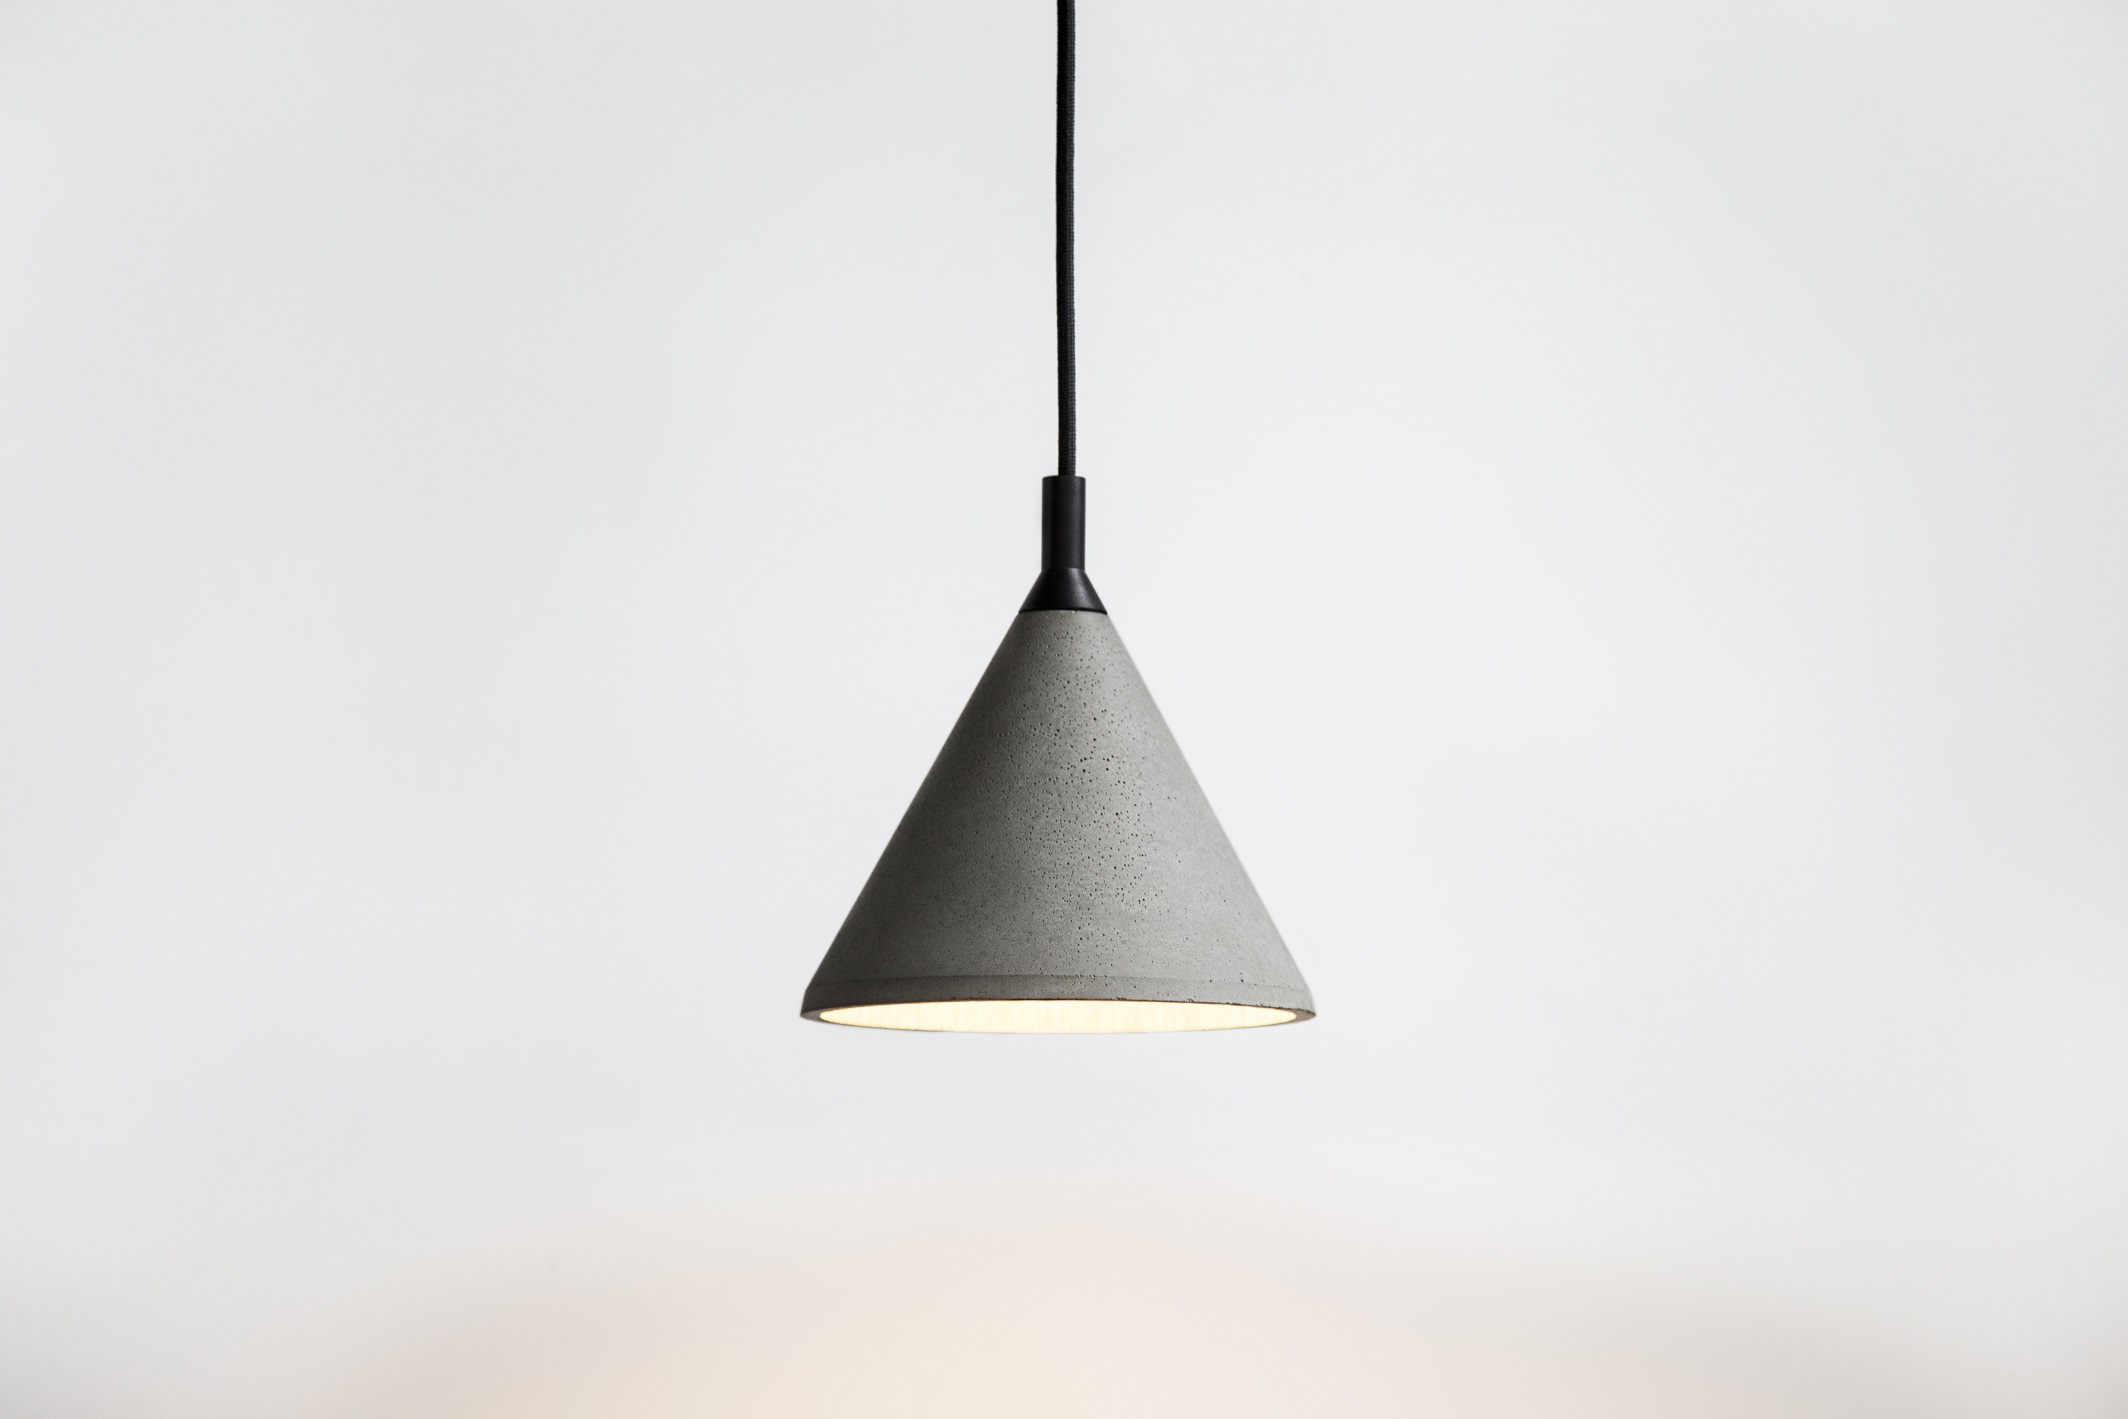 zhong concrete lamp